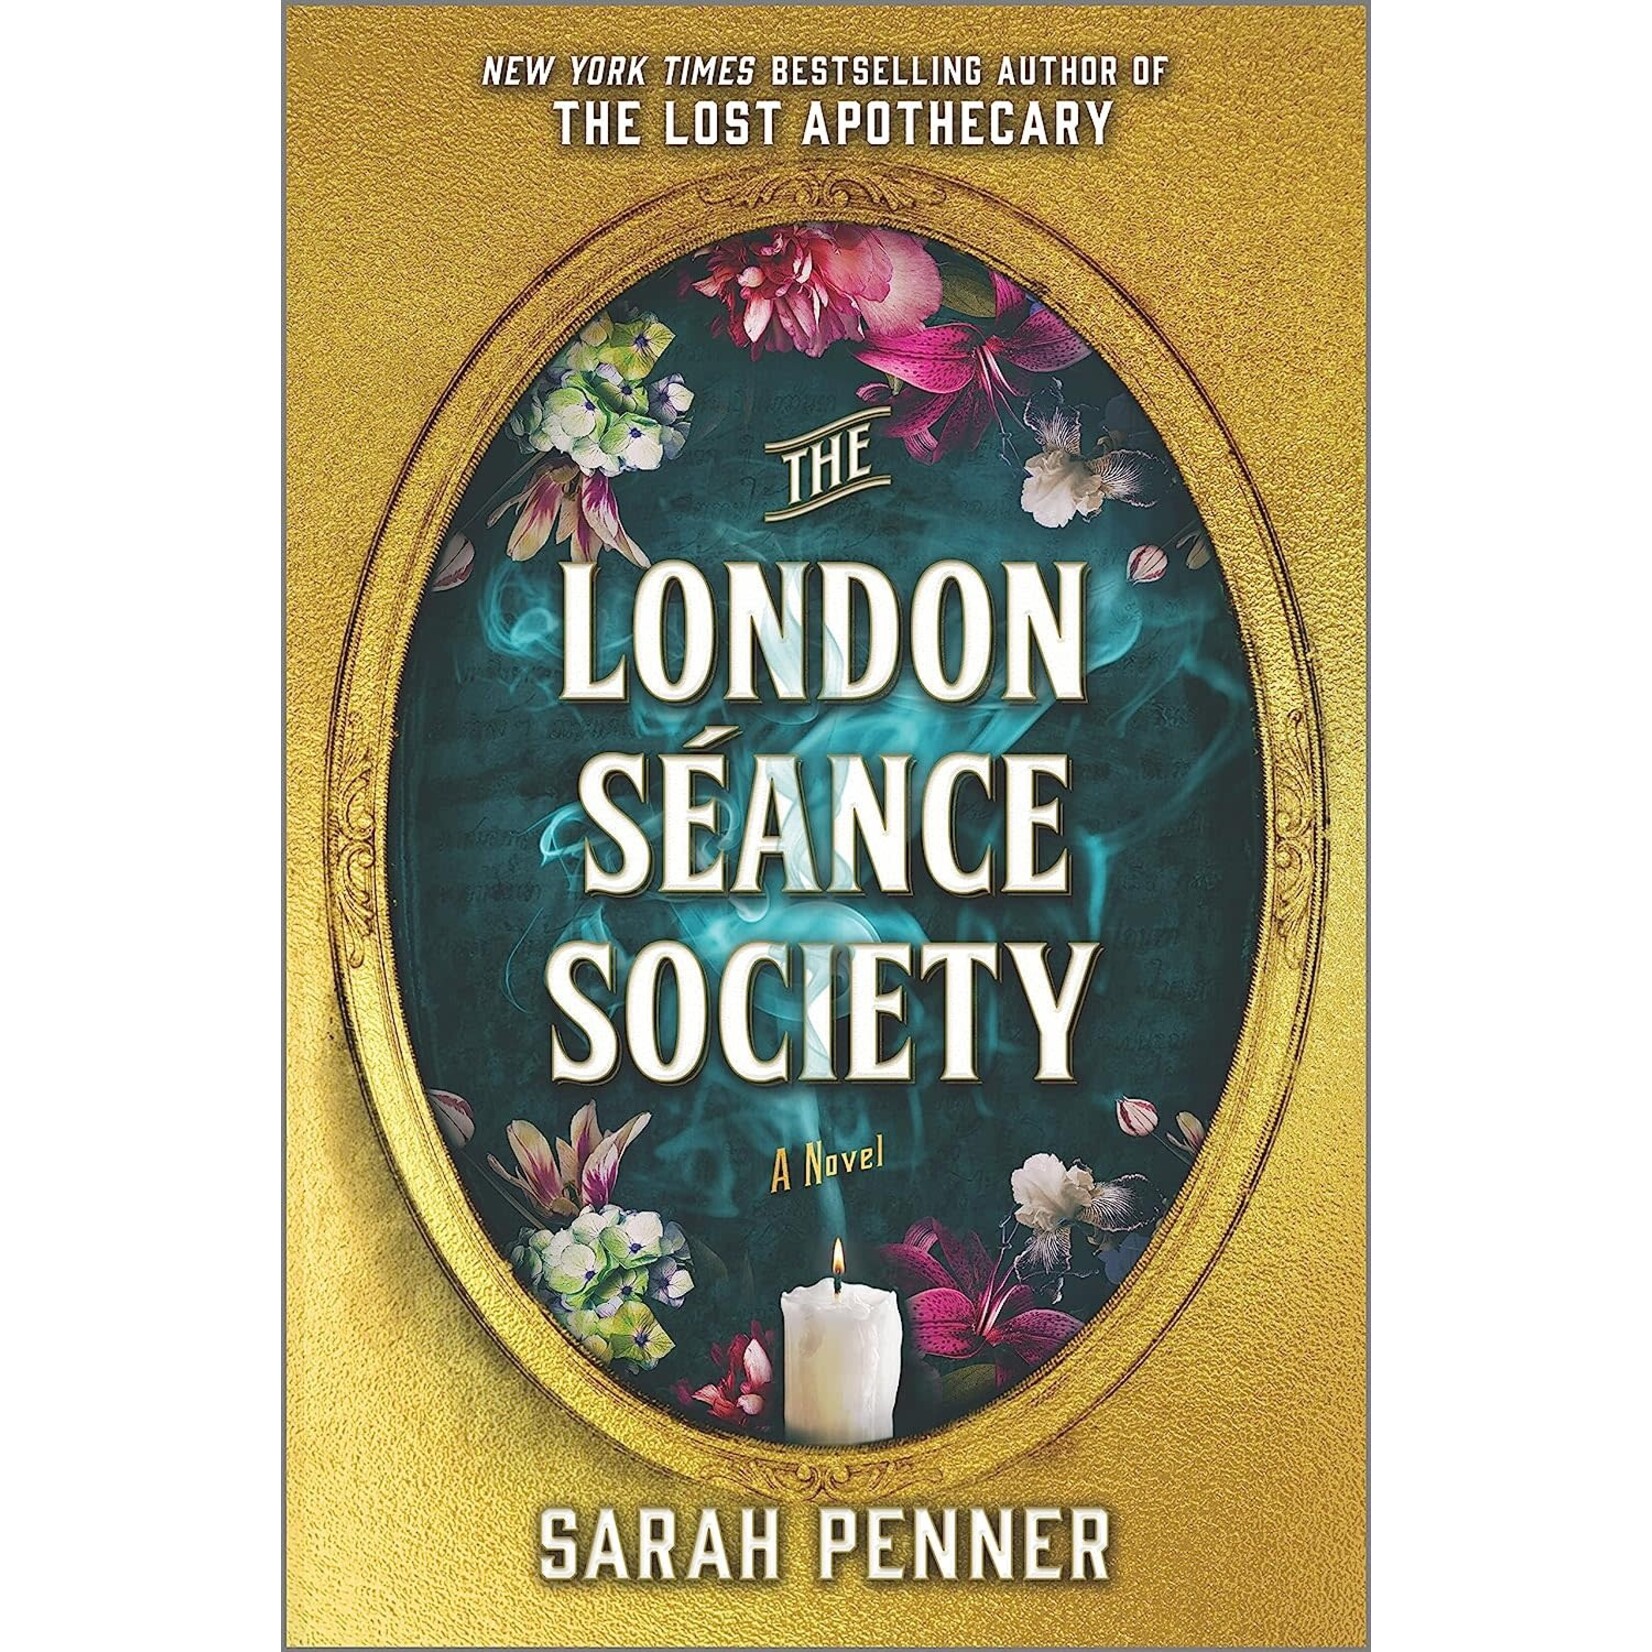 The London Séance Society: A Novel